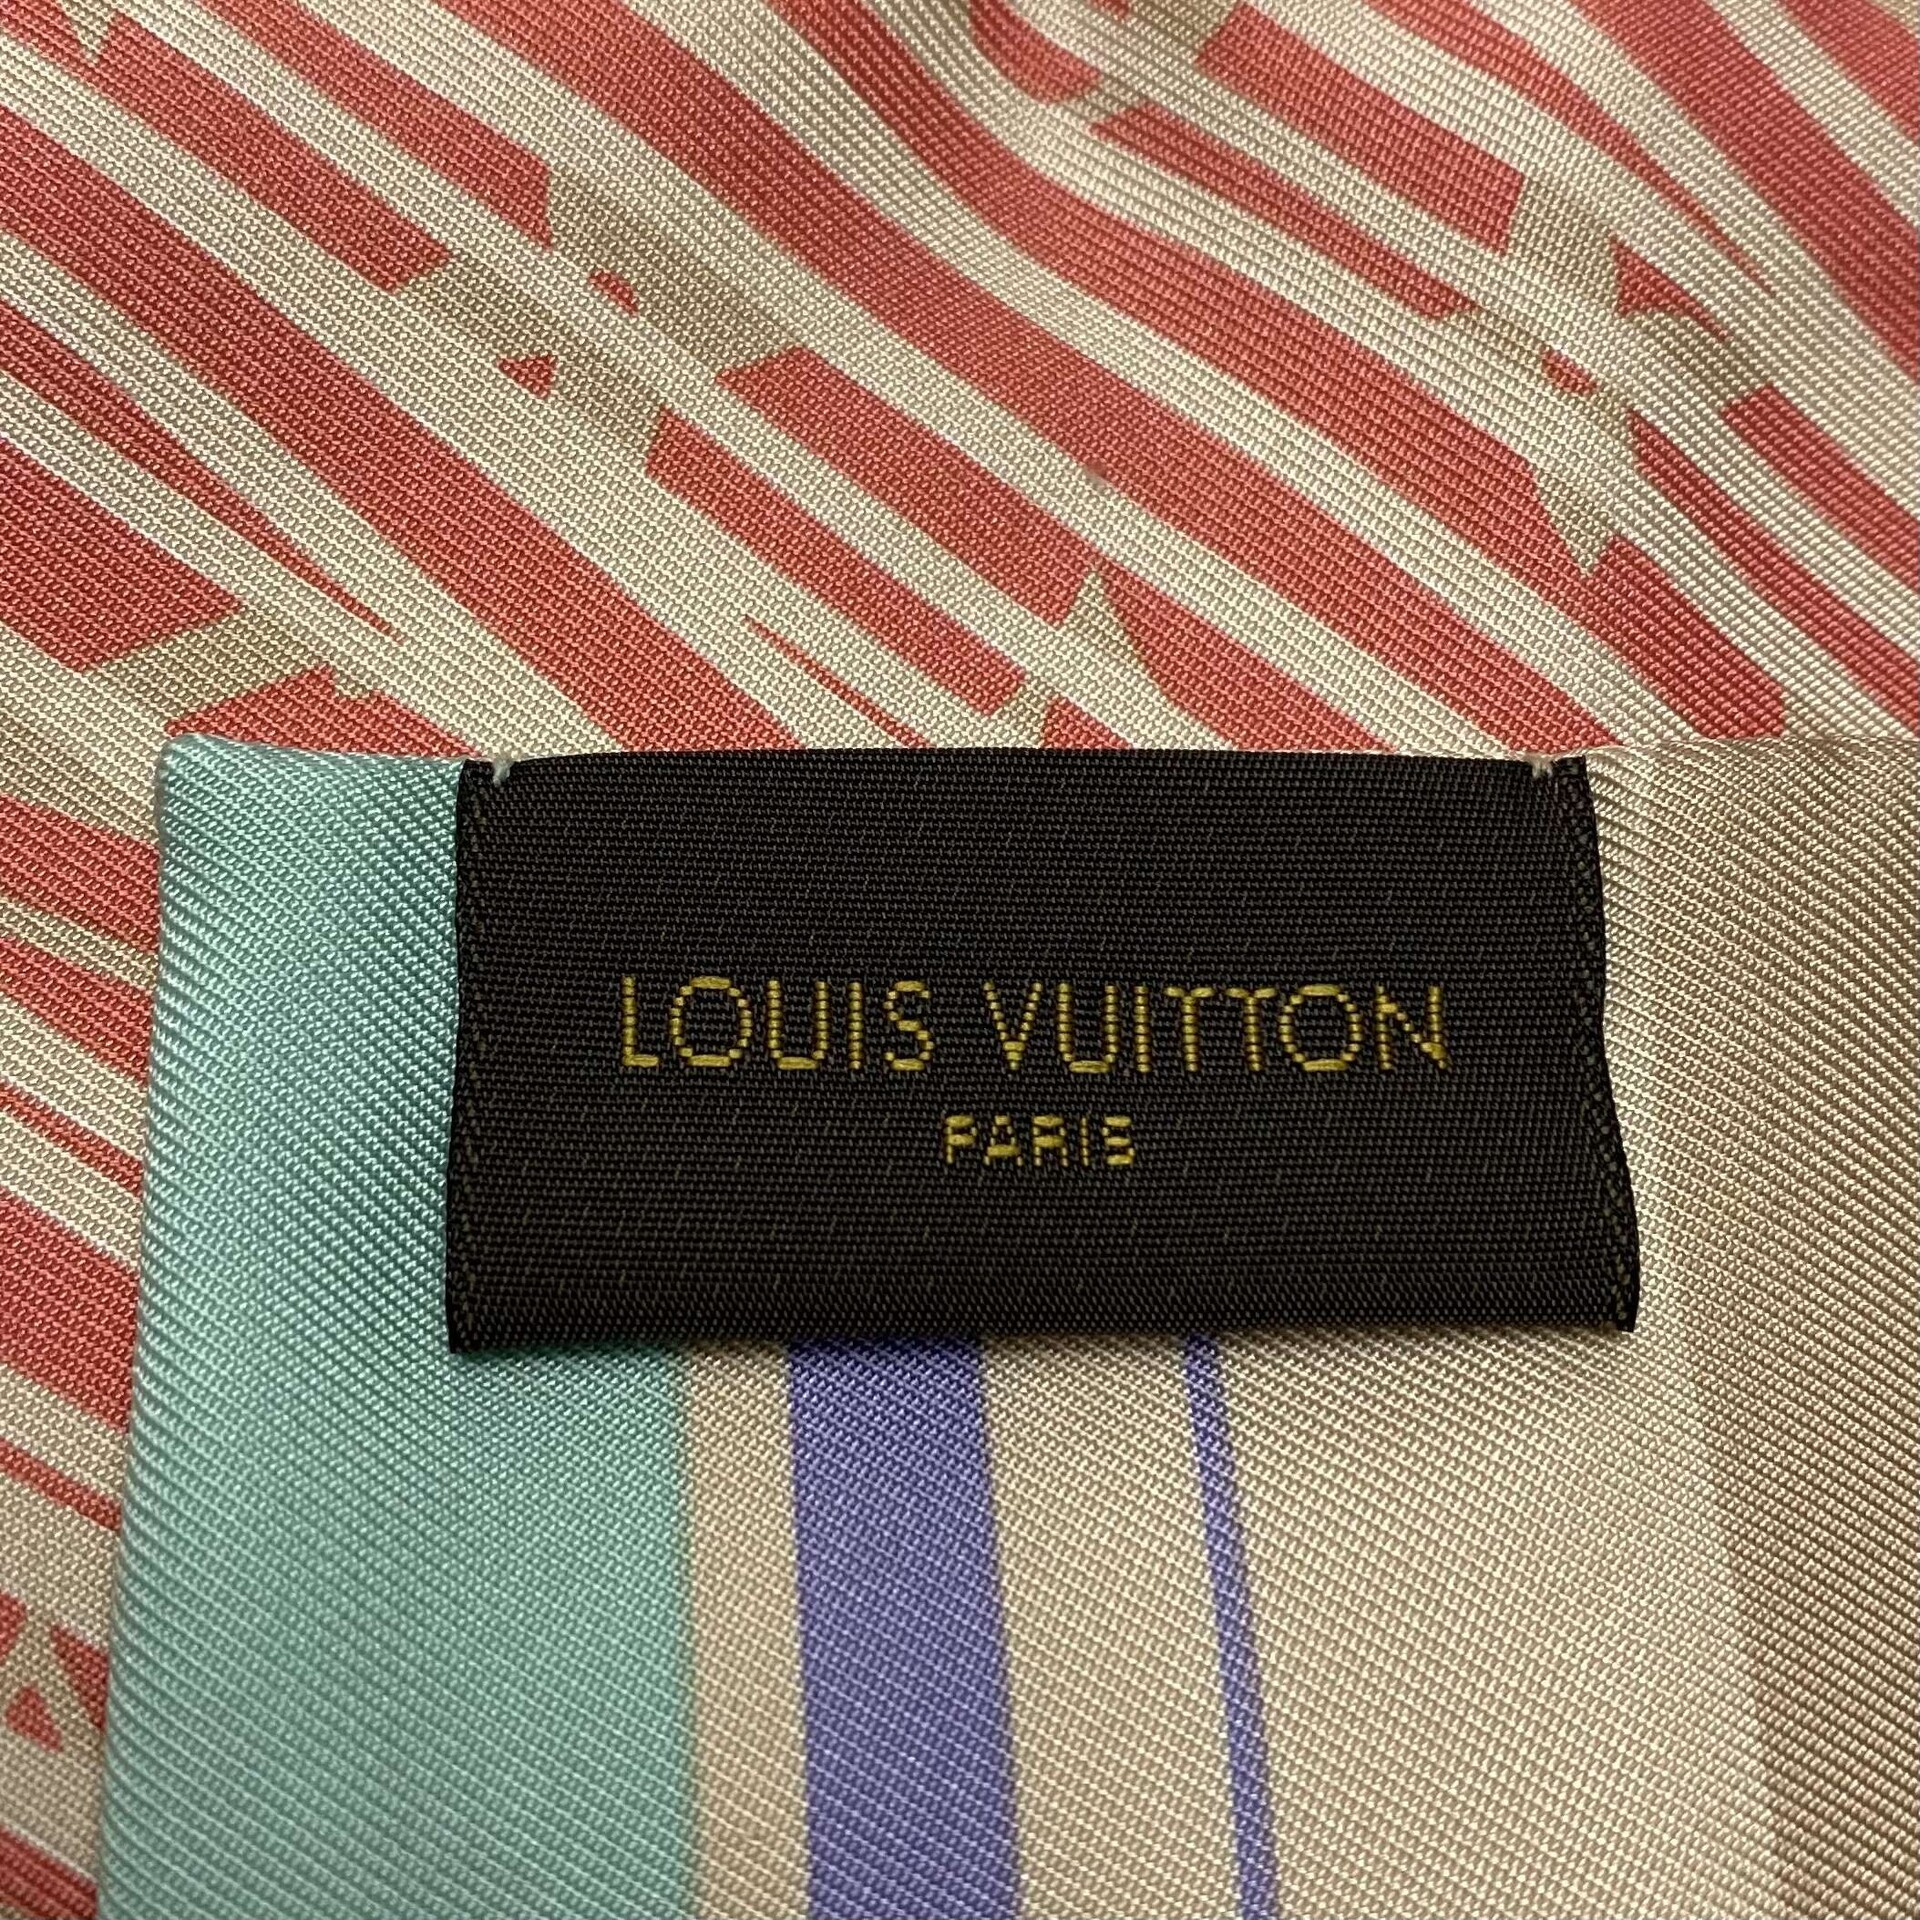 Bandeau Louis Vuitton Estampado